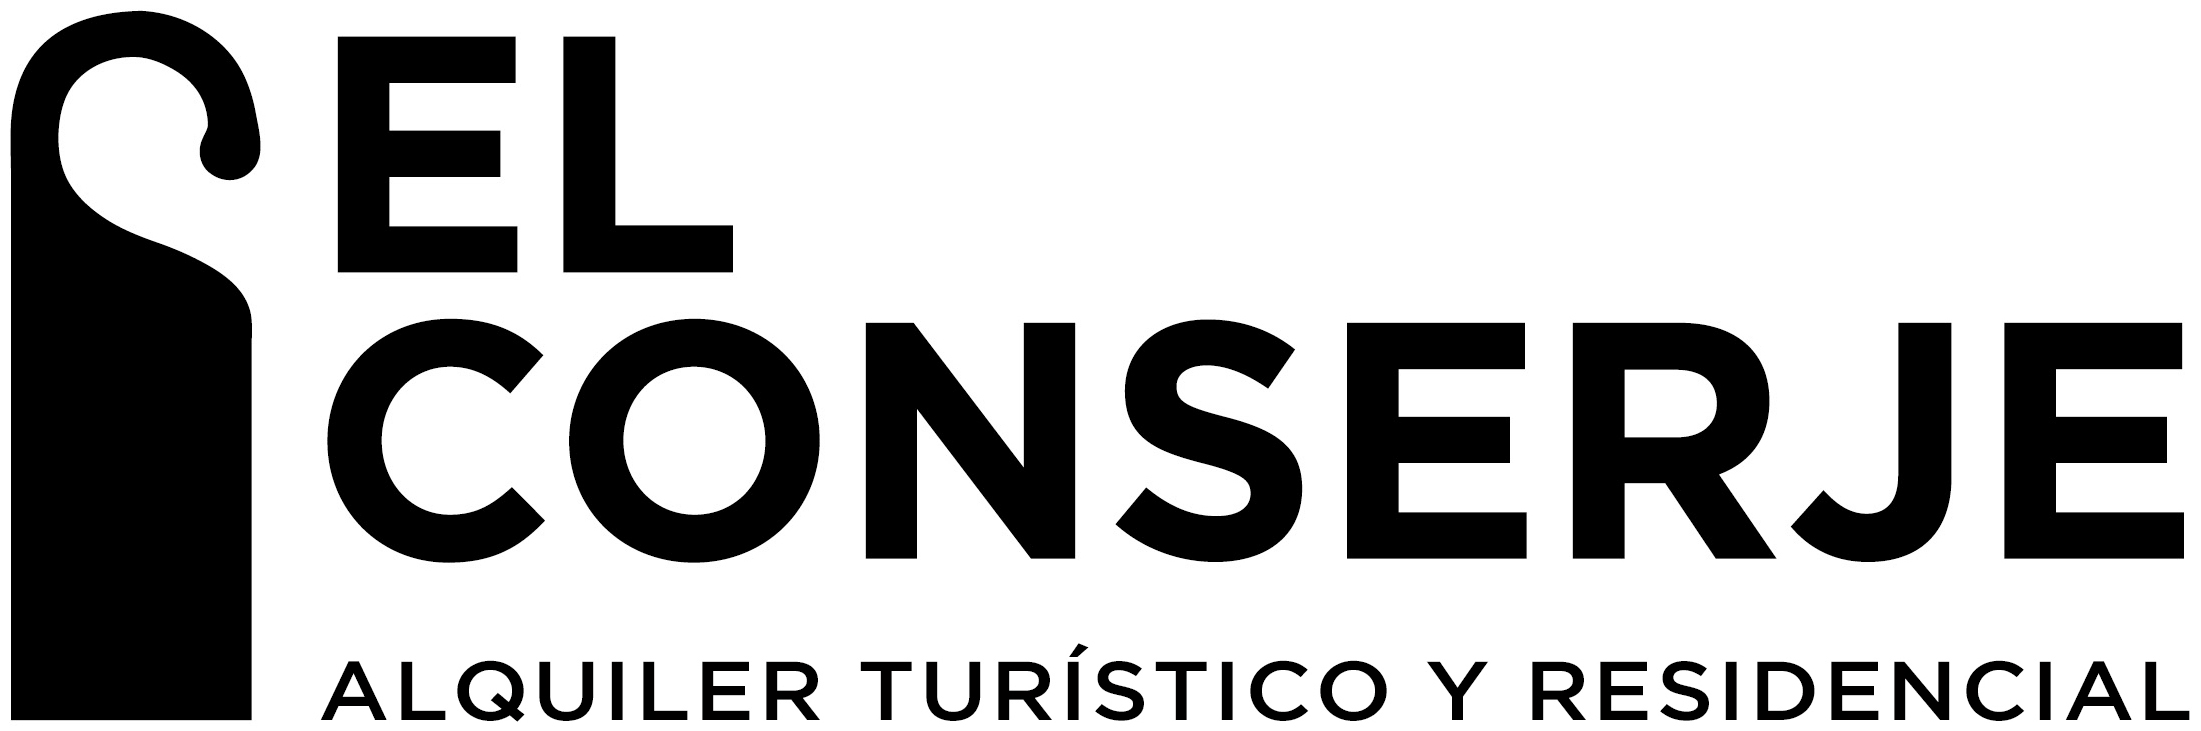 logo: El conserje